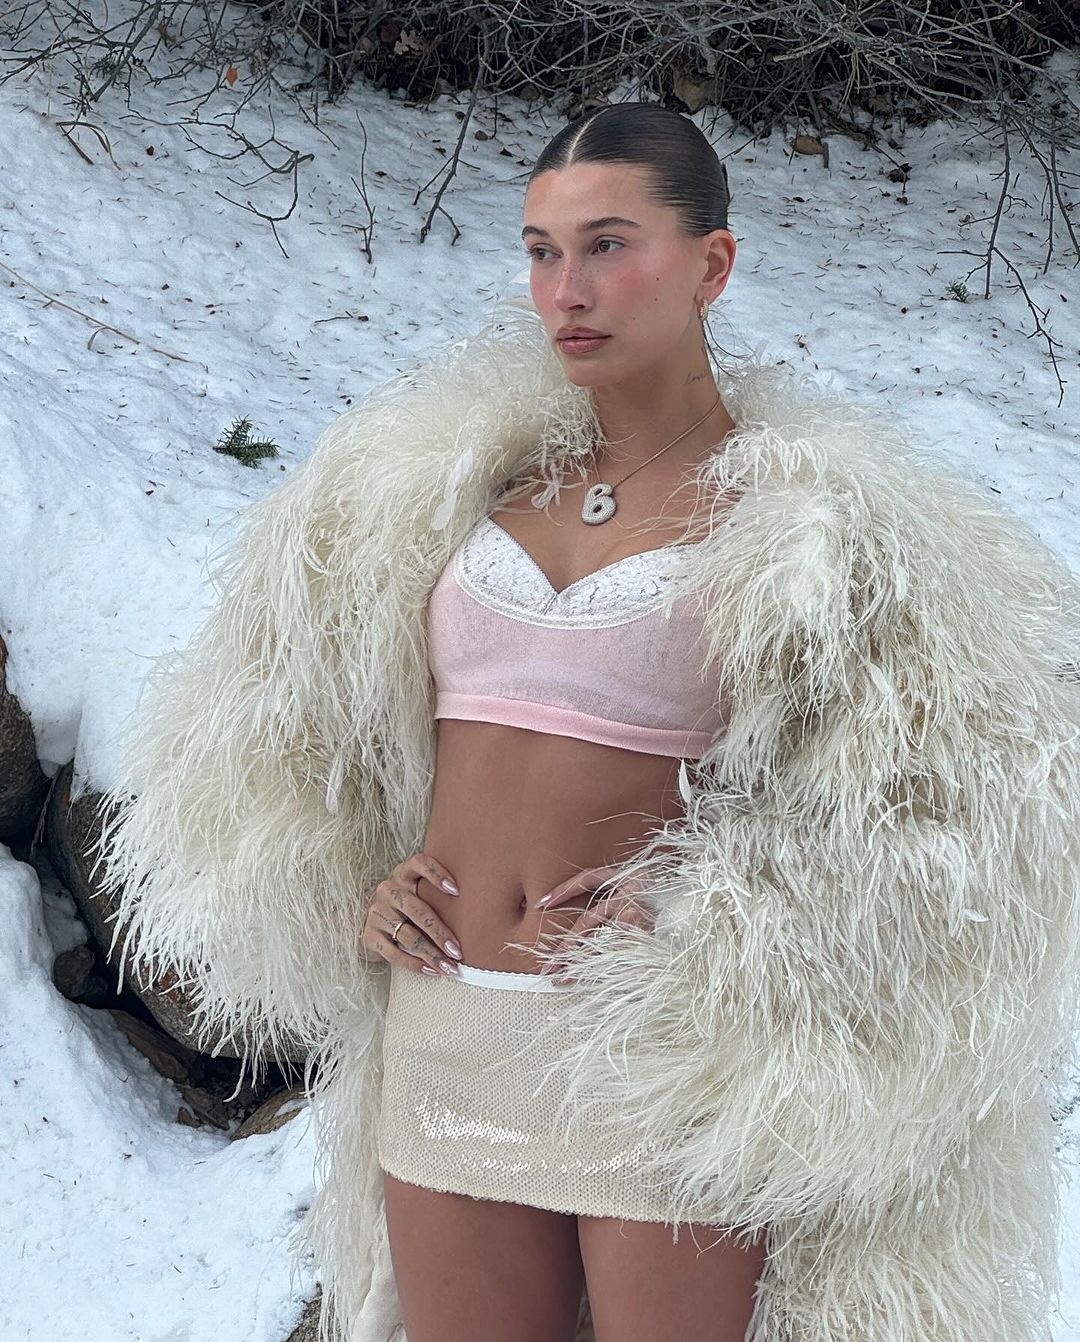 Trào lưu mặc bikini giữa trời tuyết rét buốt chưa hạ nhiệt-3